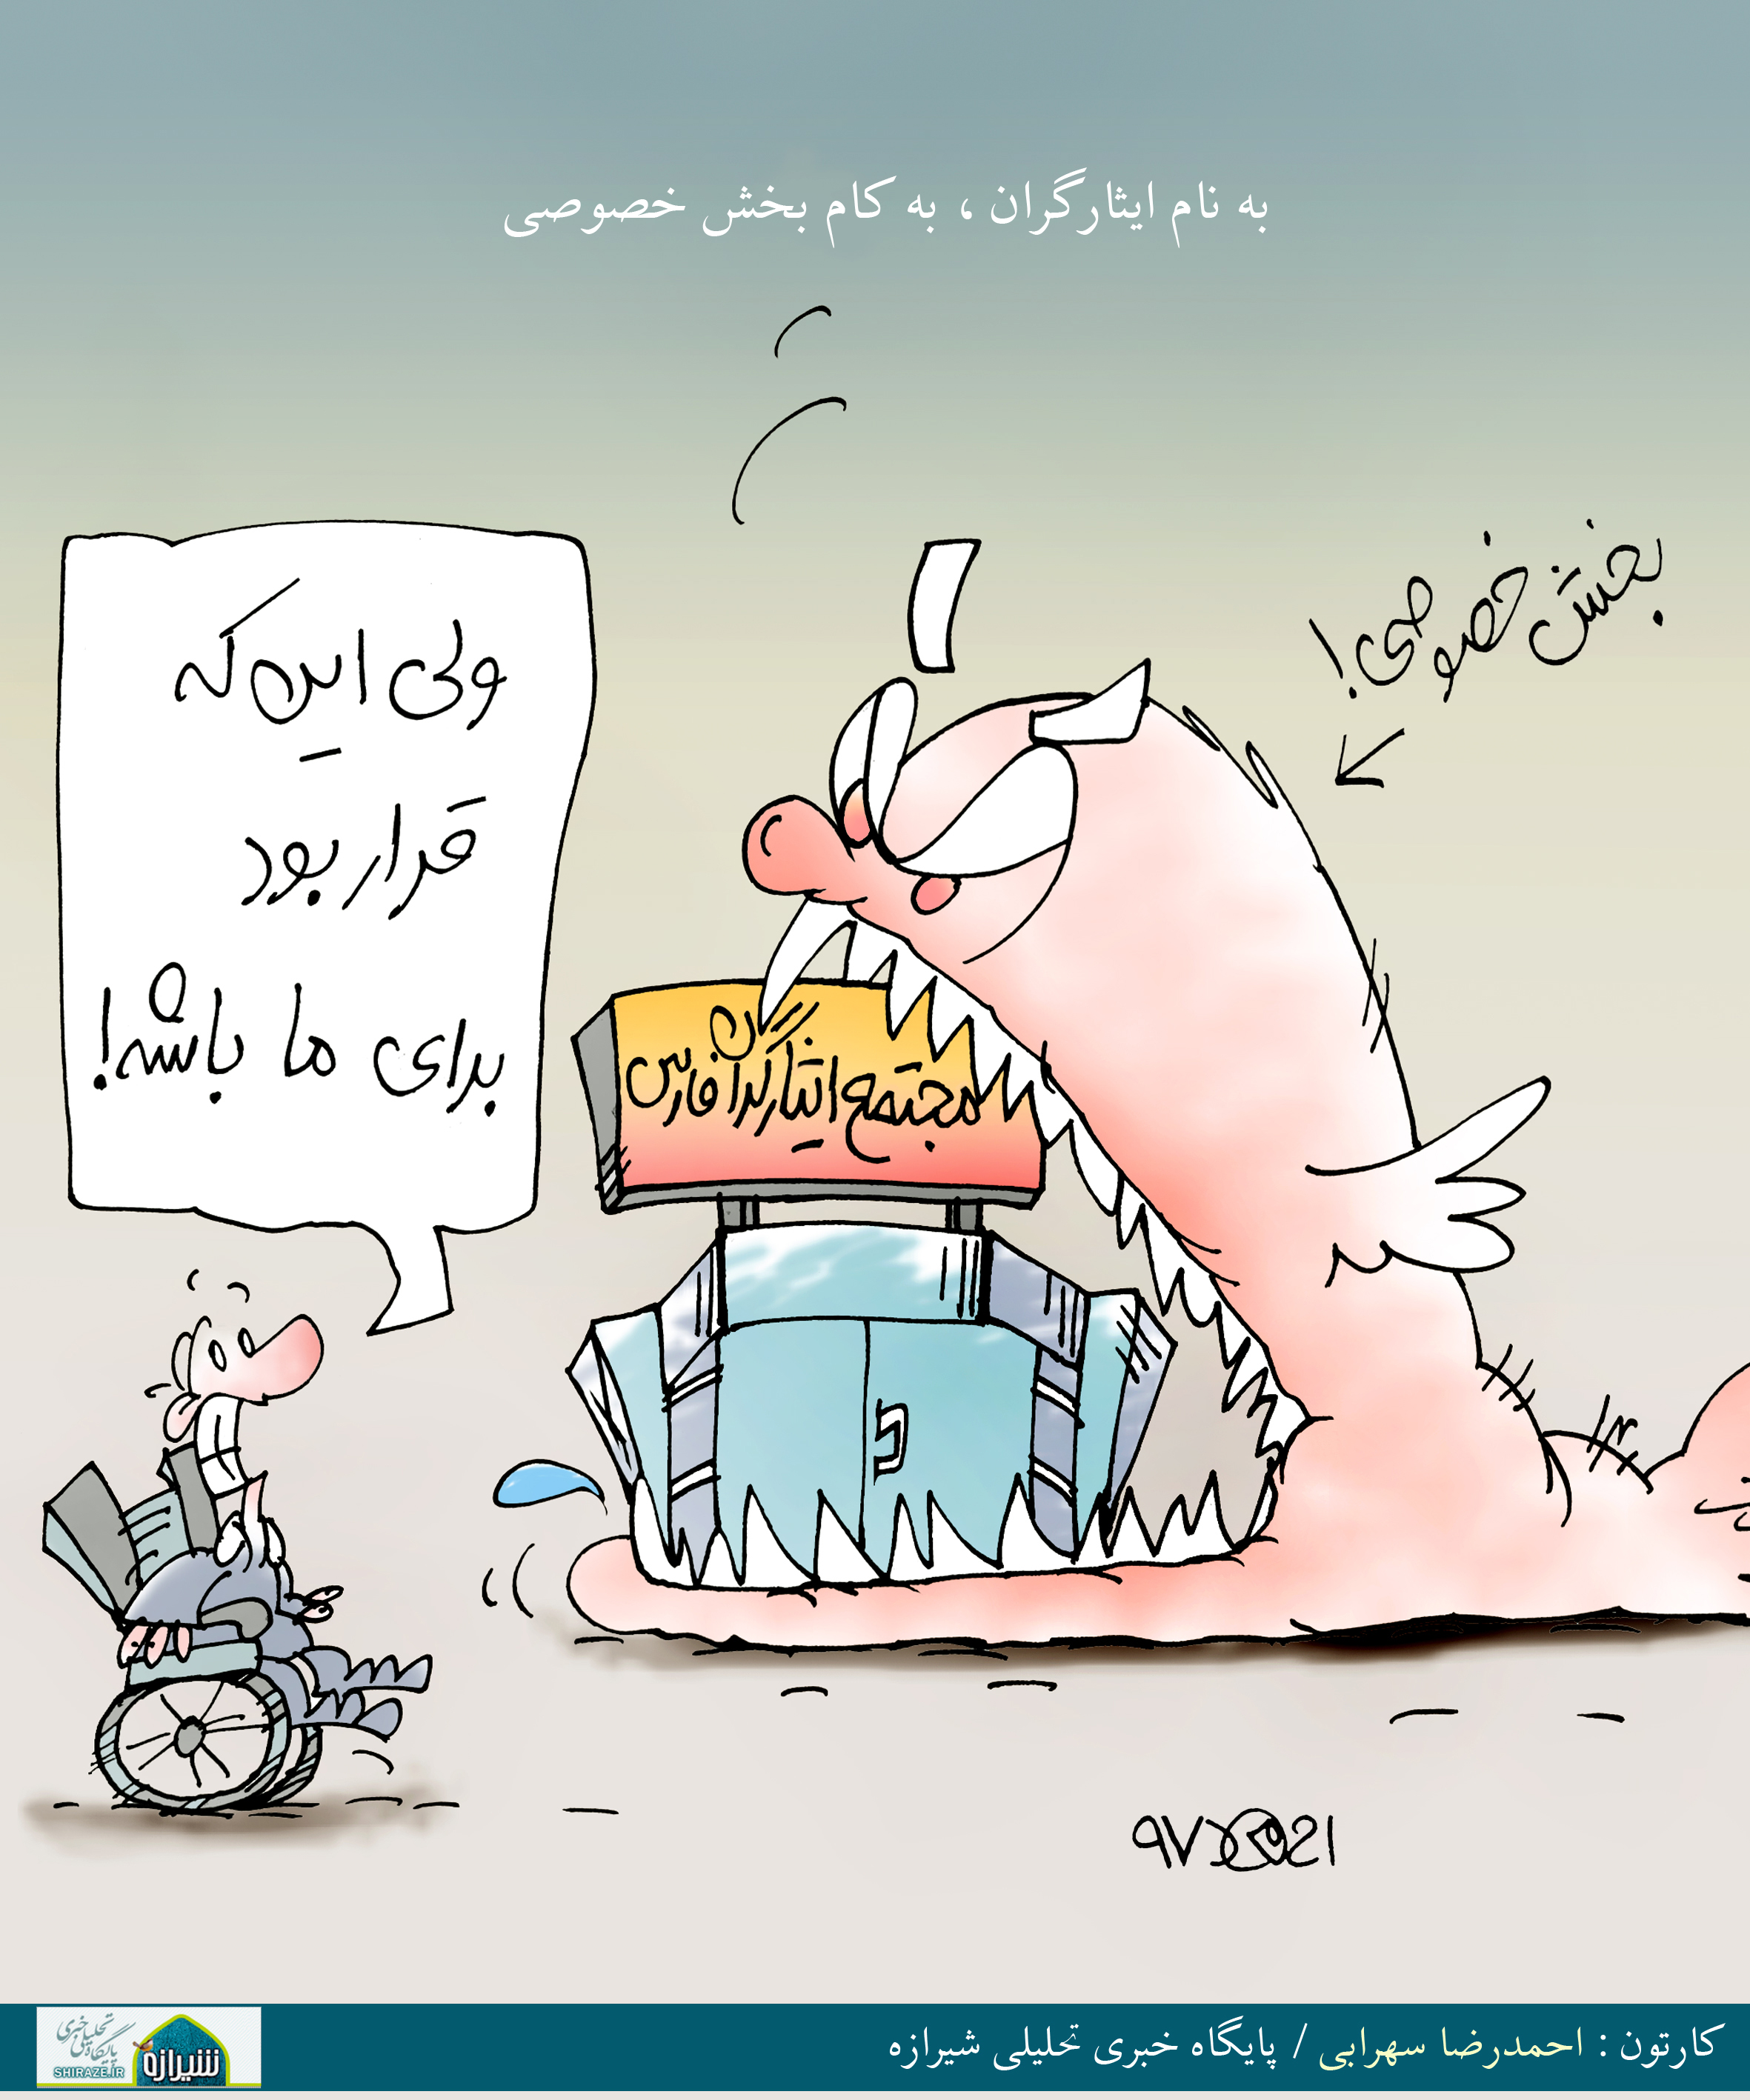 کاریکاتور شیرازه؛ به نام ایثارگران، به کام بخش خصوصی!